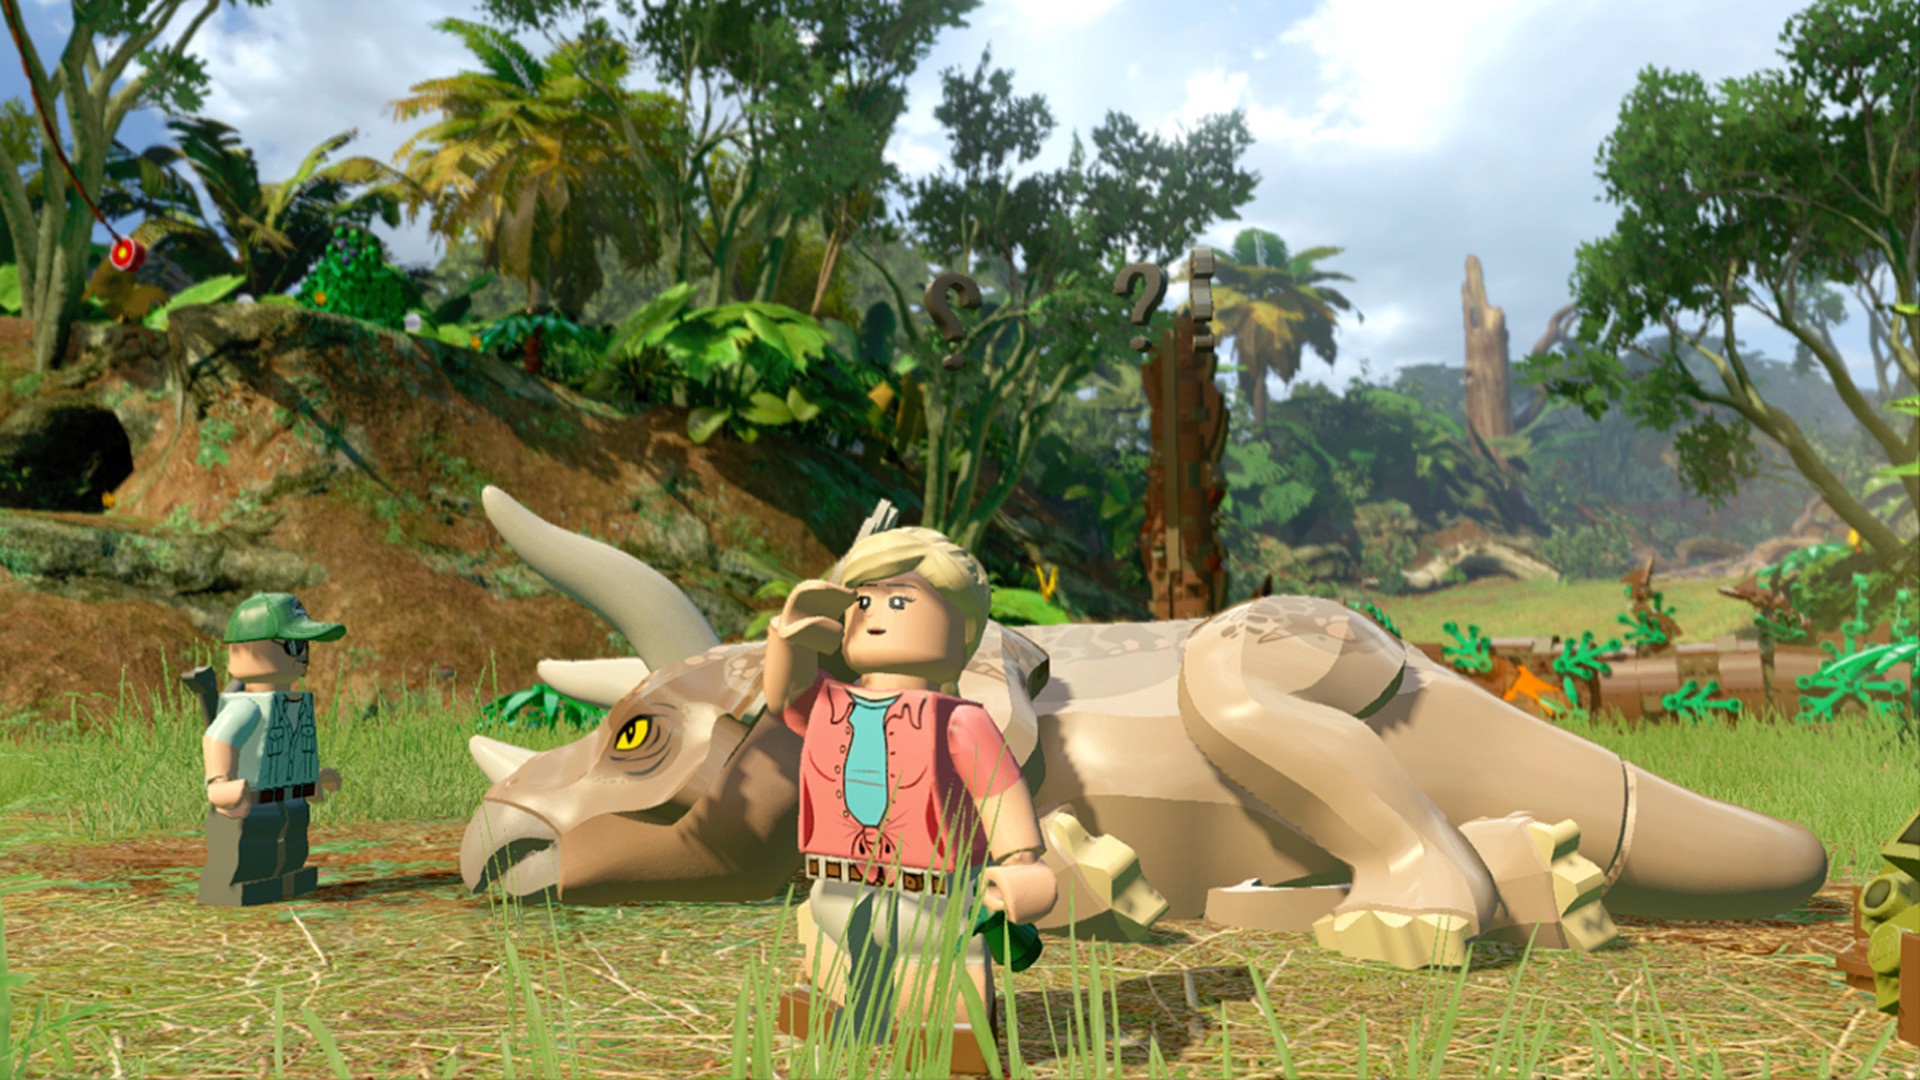 Lego Ellie Satler ing salah sawijining game dinosaurus sing paling apik, lego: Jurassic World